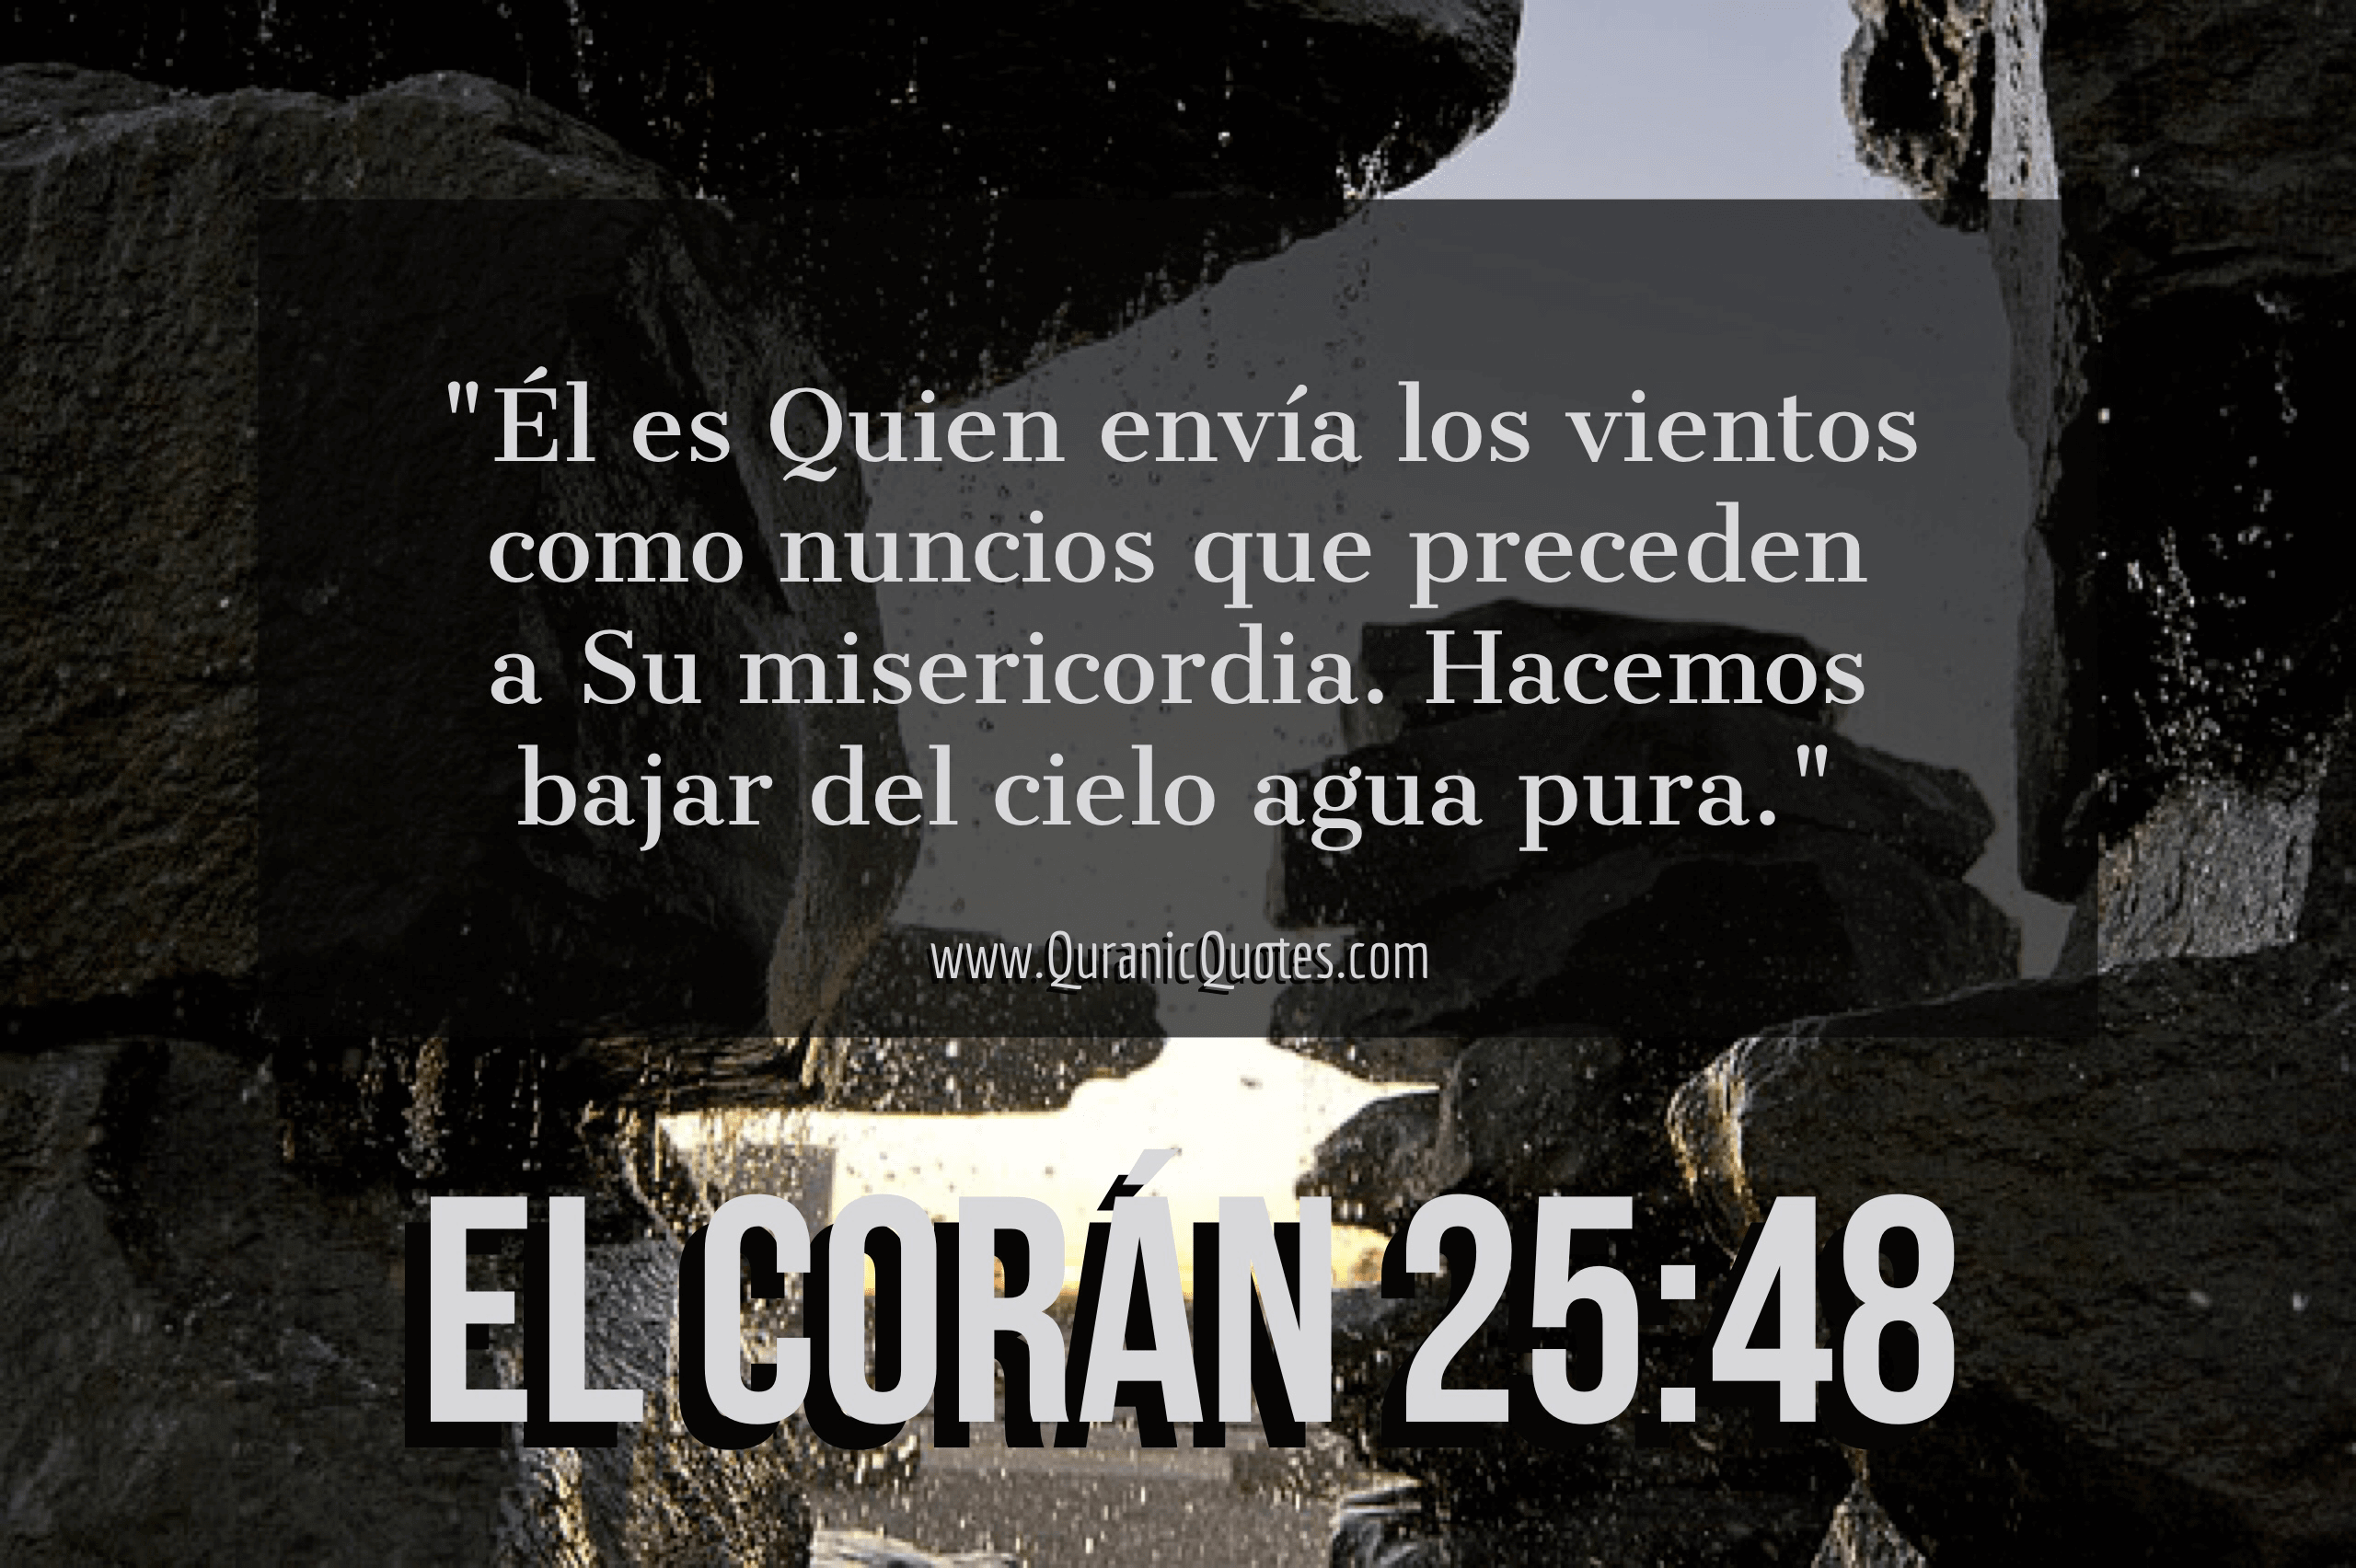 Quranic Quotes Español #151